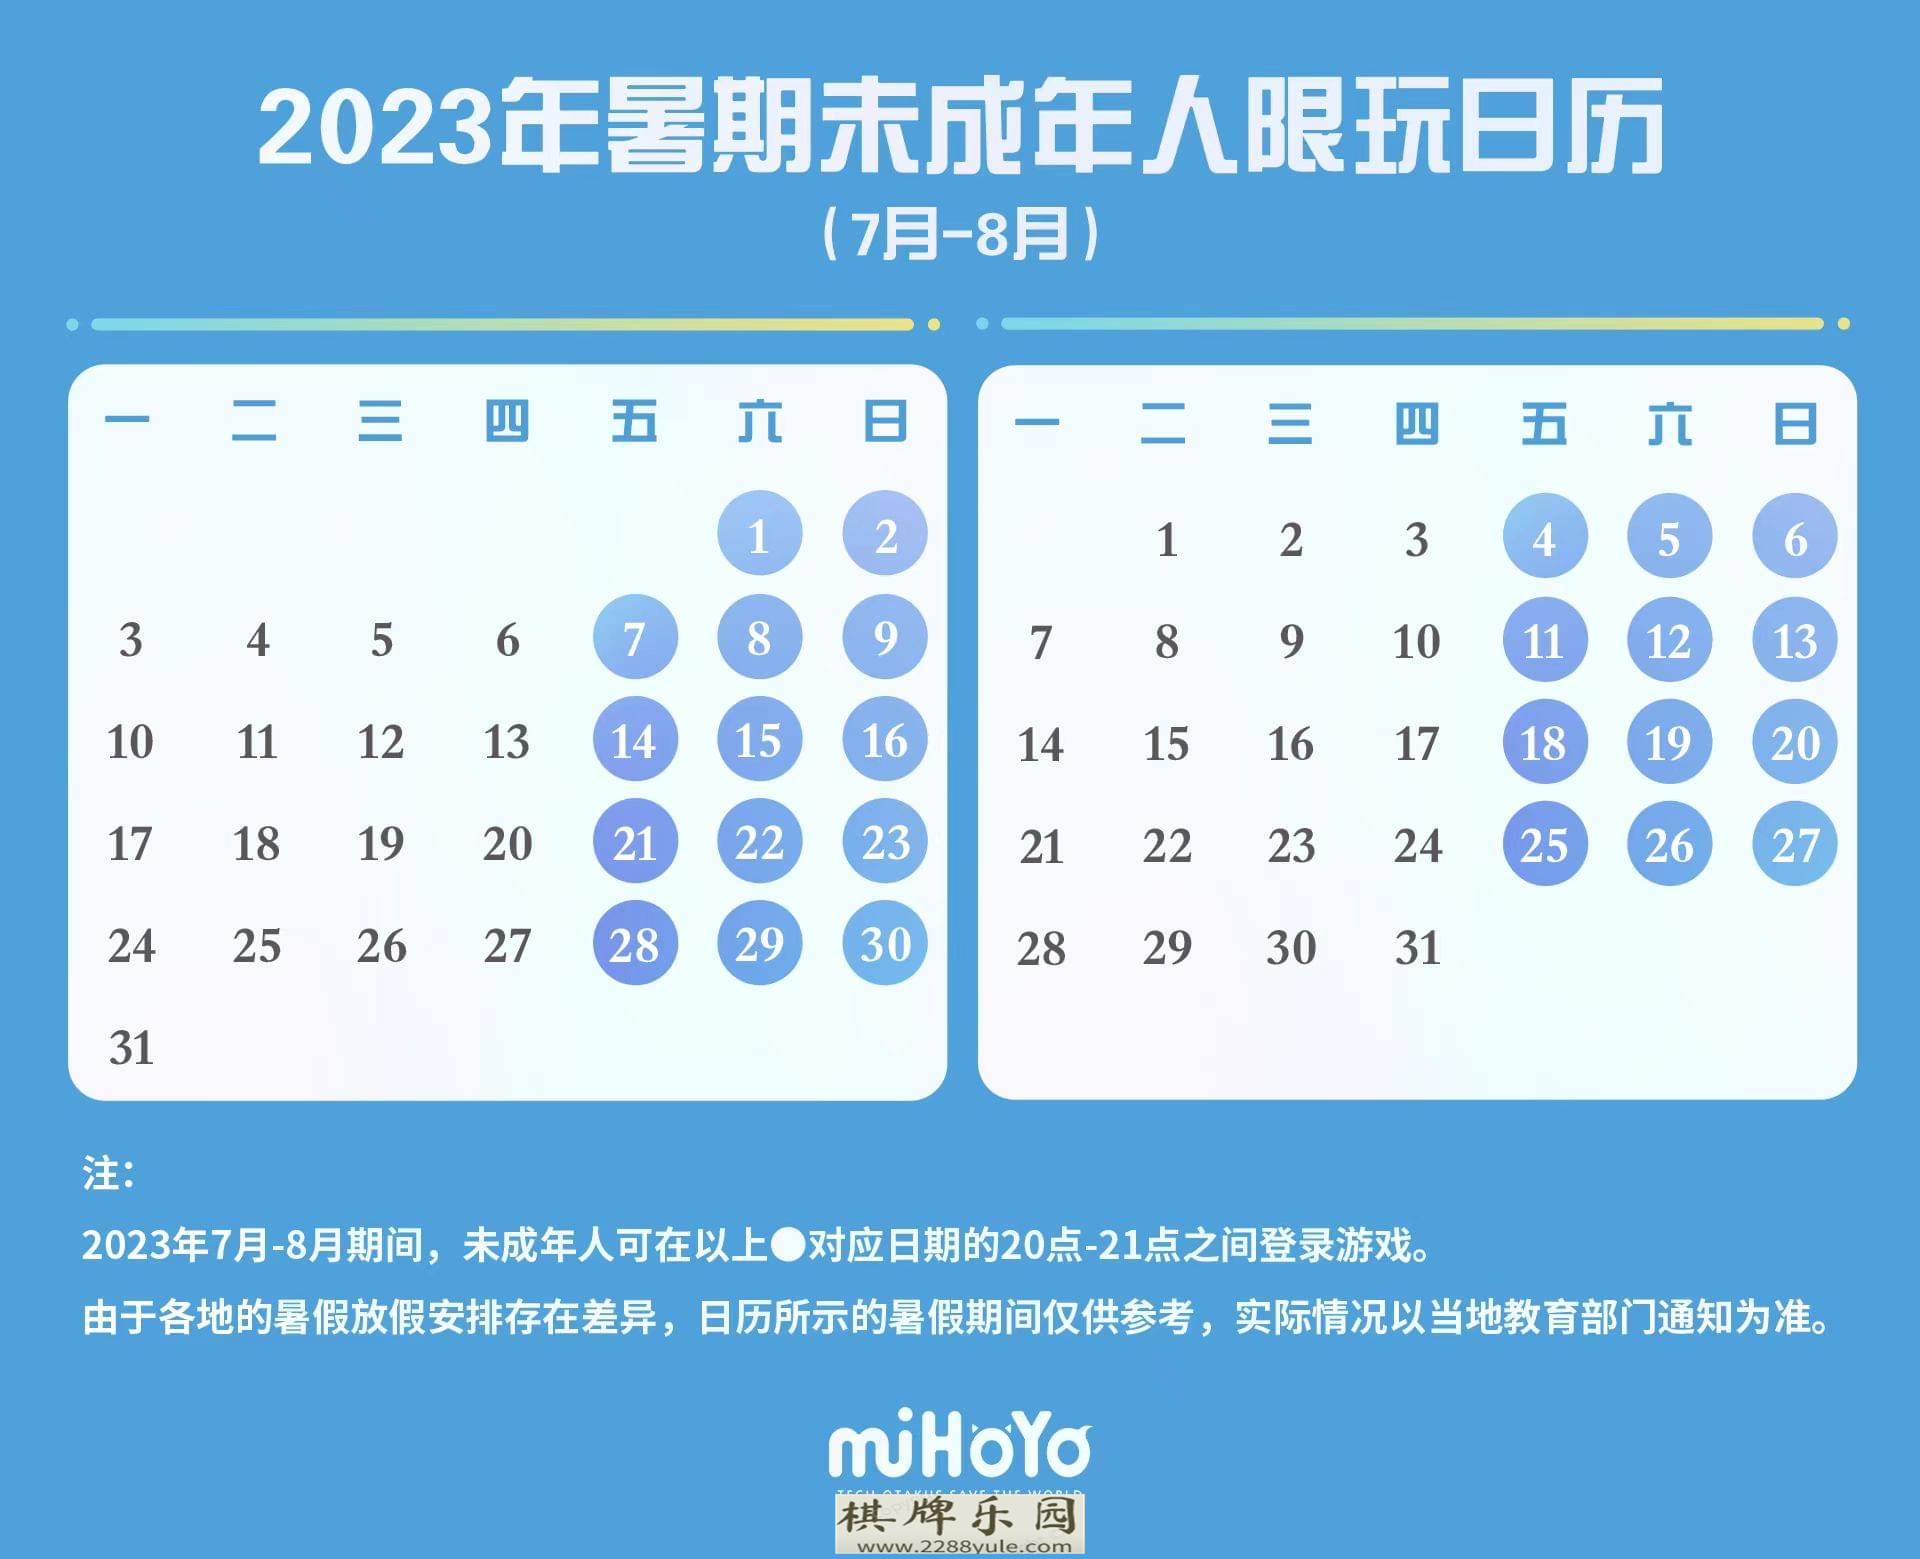 腾讯网易米哈游发布暑期未成年人限玩公告：周